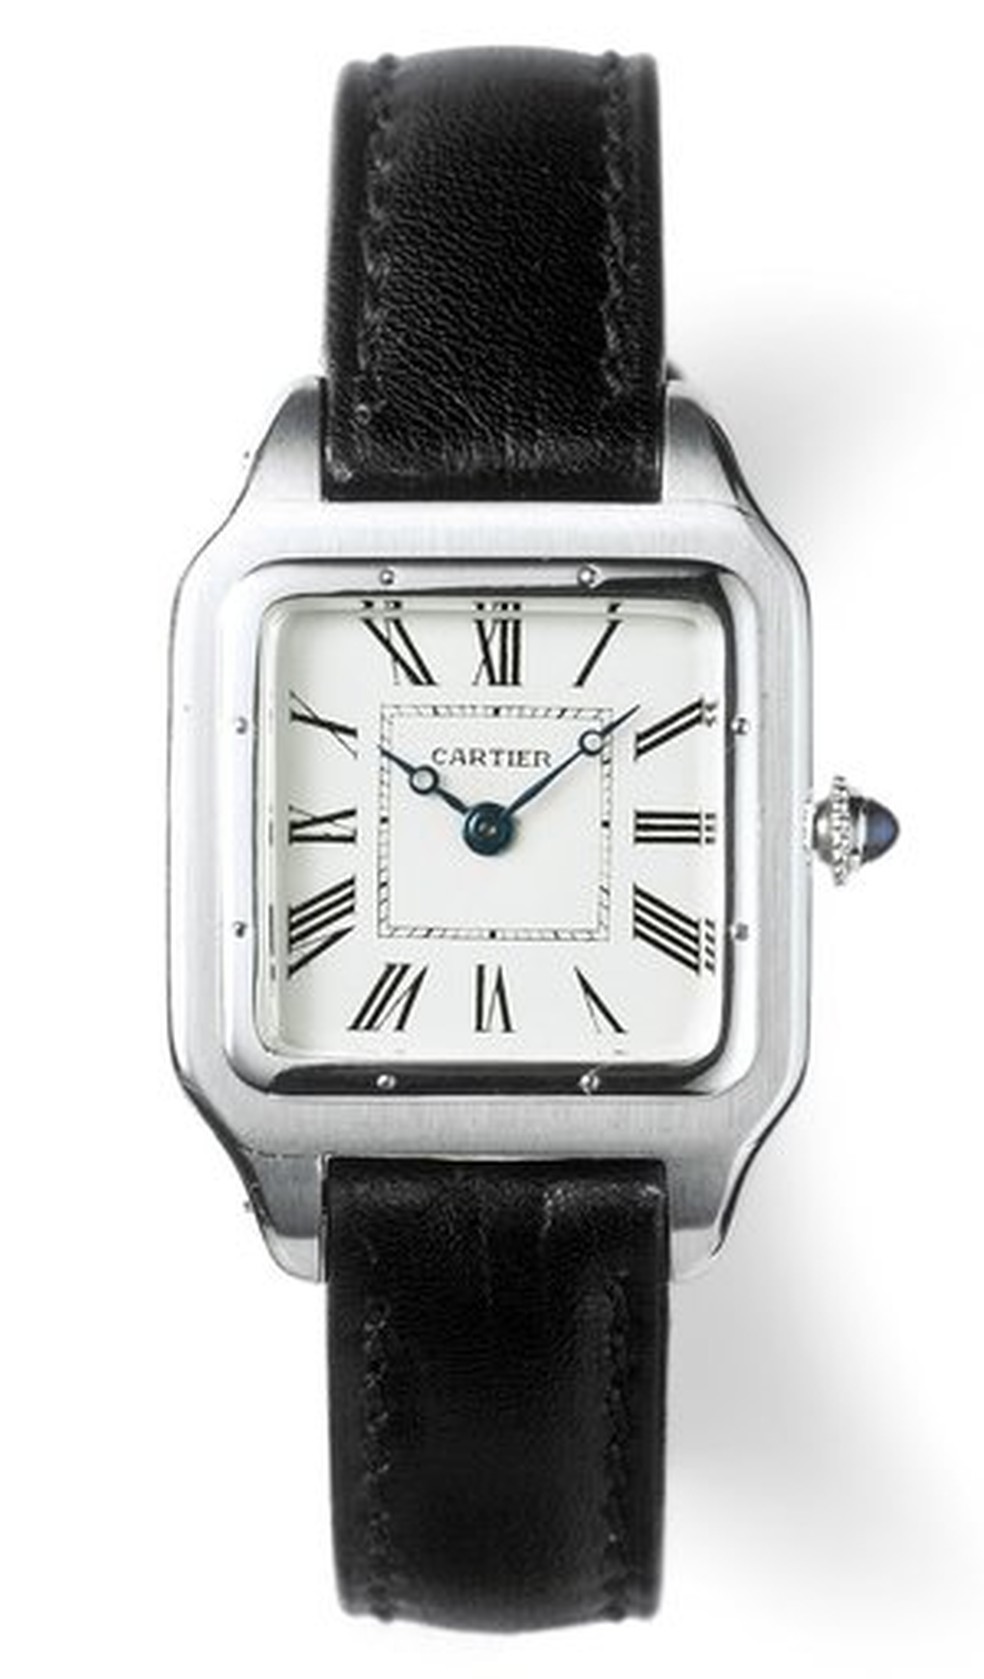 Modelo vintage do Cartier Santos Dumont, relógio que foi popularizados pelo aviador brasileiro — Foto: Reprodução/www.rescapement.com/